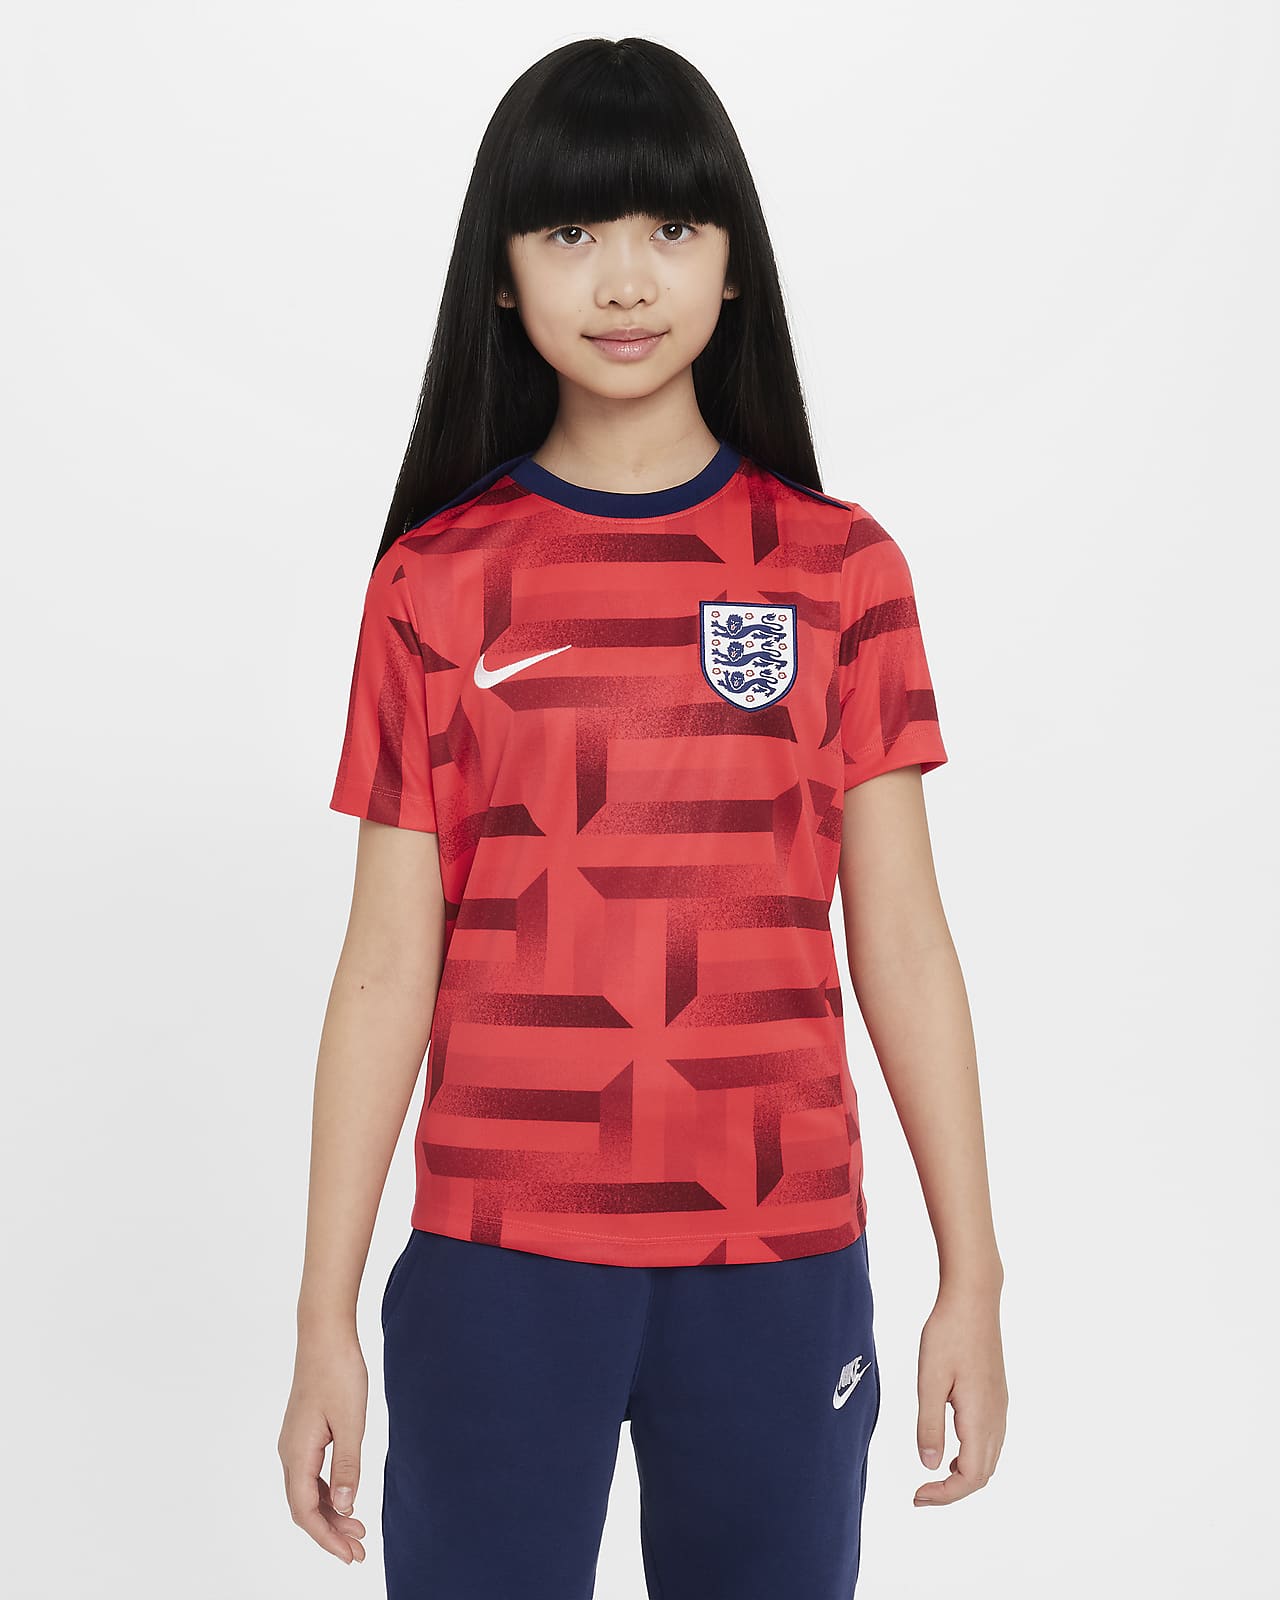 Ποδοσφαιρική κοντομάνικη μπλούζα προθέρμανσης Nike Dri-FIT Αγγλία Academy Pro για μεγάλα παιδιά